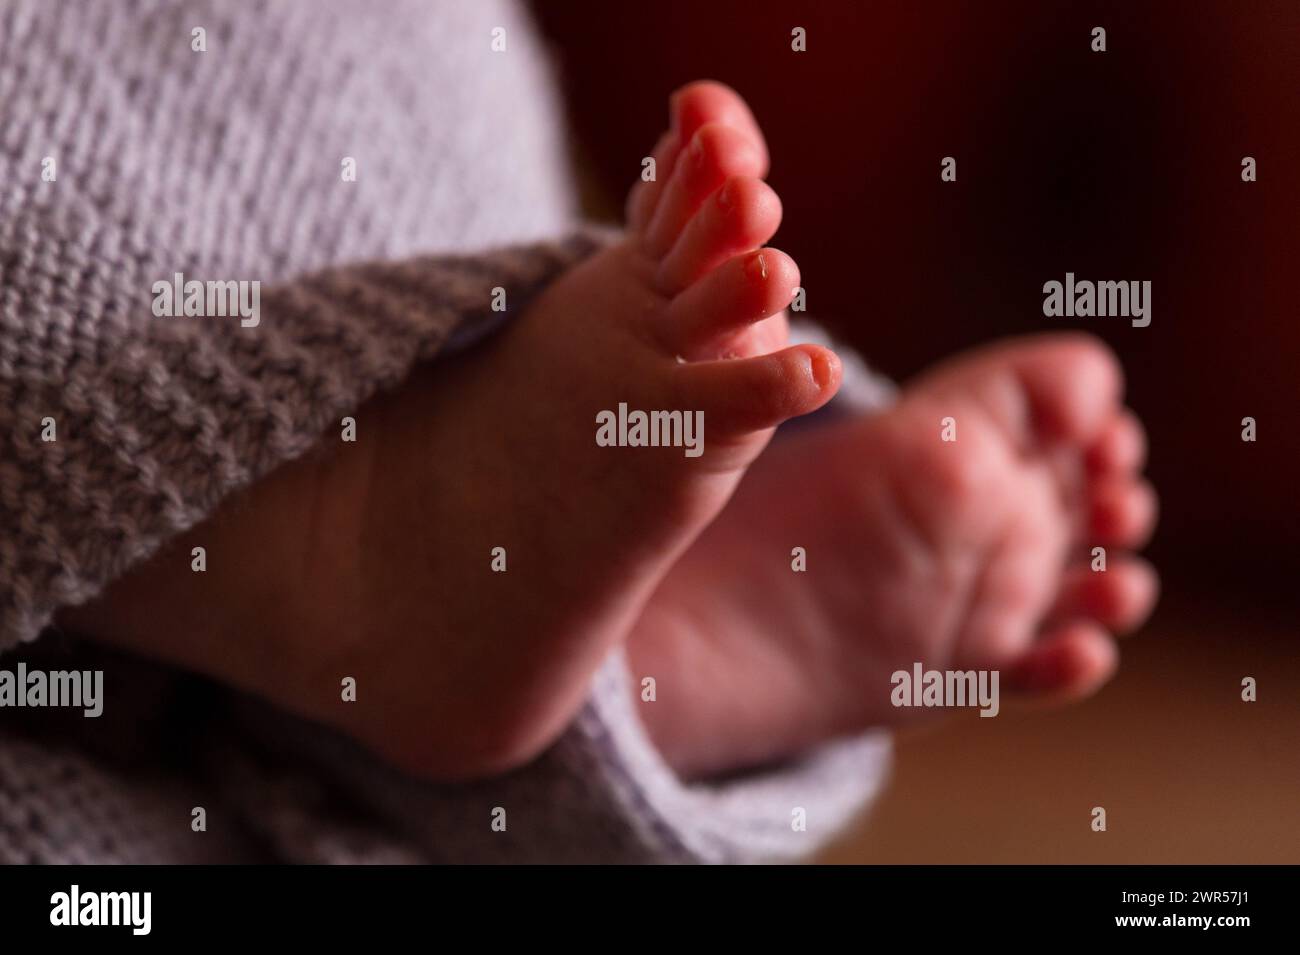 Foto de archivo fechada el 23/01/16 de los pies de un nuevo bebé envuelto en una manta. Los padres están poniendo a sus bebés en un mayor riesgo de asfixia o síndrome de muerte súbita del lactante (SMSL, por sus siglas en inglés) al permitirles dormir en bouncers o columpios, advirtió una organización benéfica. Una encuesta de 1.000 padres de bebés menores de un año realizada por The Lullaby Trust encontró que el 70% permitió que su bebé durmiera en una gaviota, el 67% en un columpio y el 61% en una bolsa de beanbag. Fecha de emisión: Lunes 11 de marzo de 2024. Foto de stock